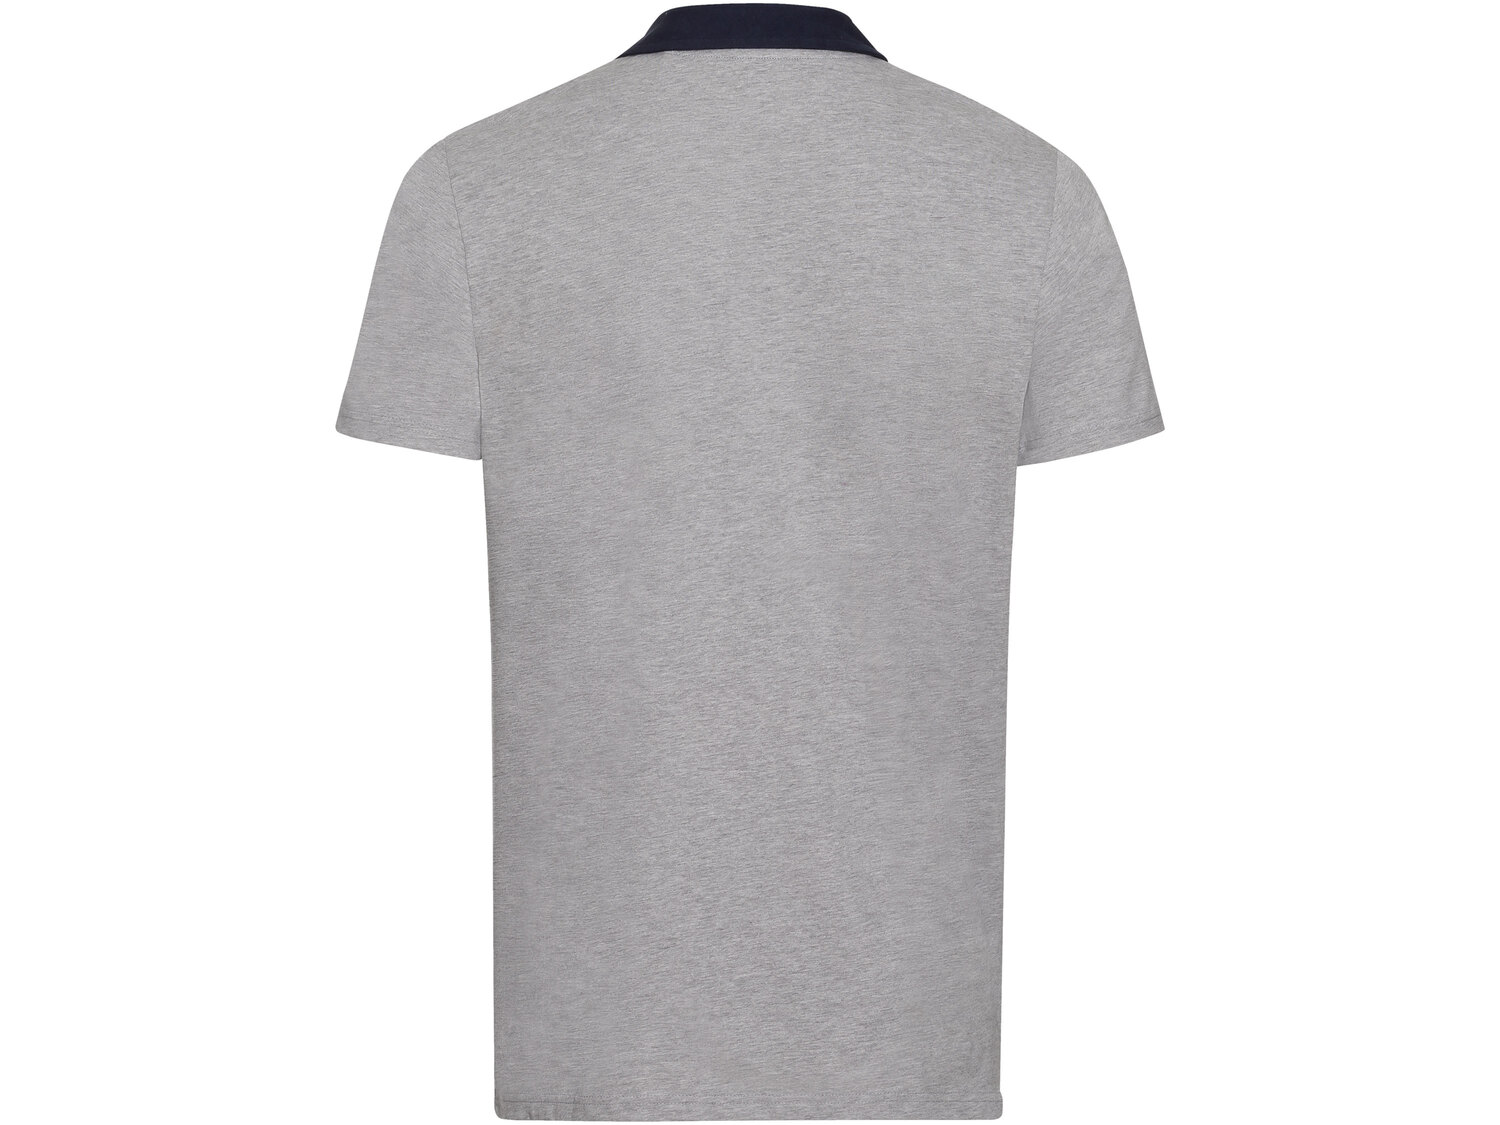 Koszulka polo męska , cena 29,99 PLN 
- rozmiary: M-XL
- z modnymi detalami
- ...